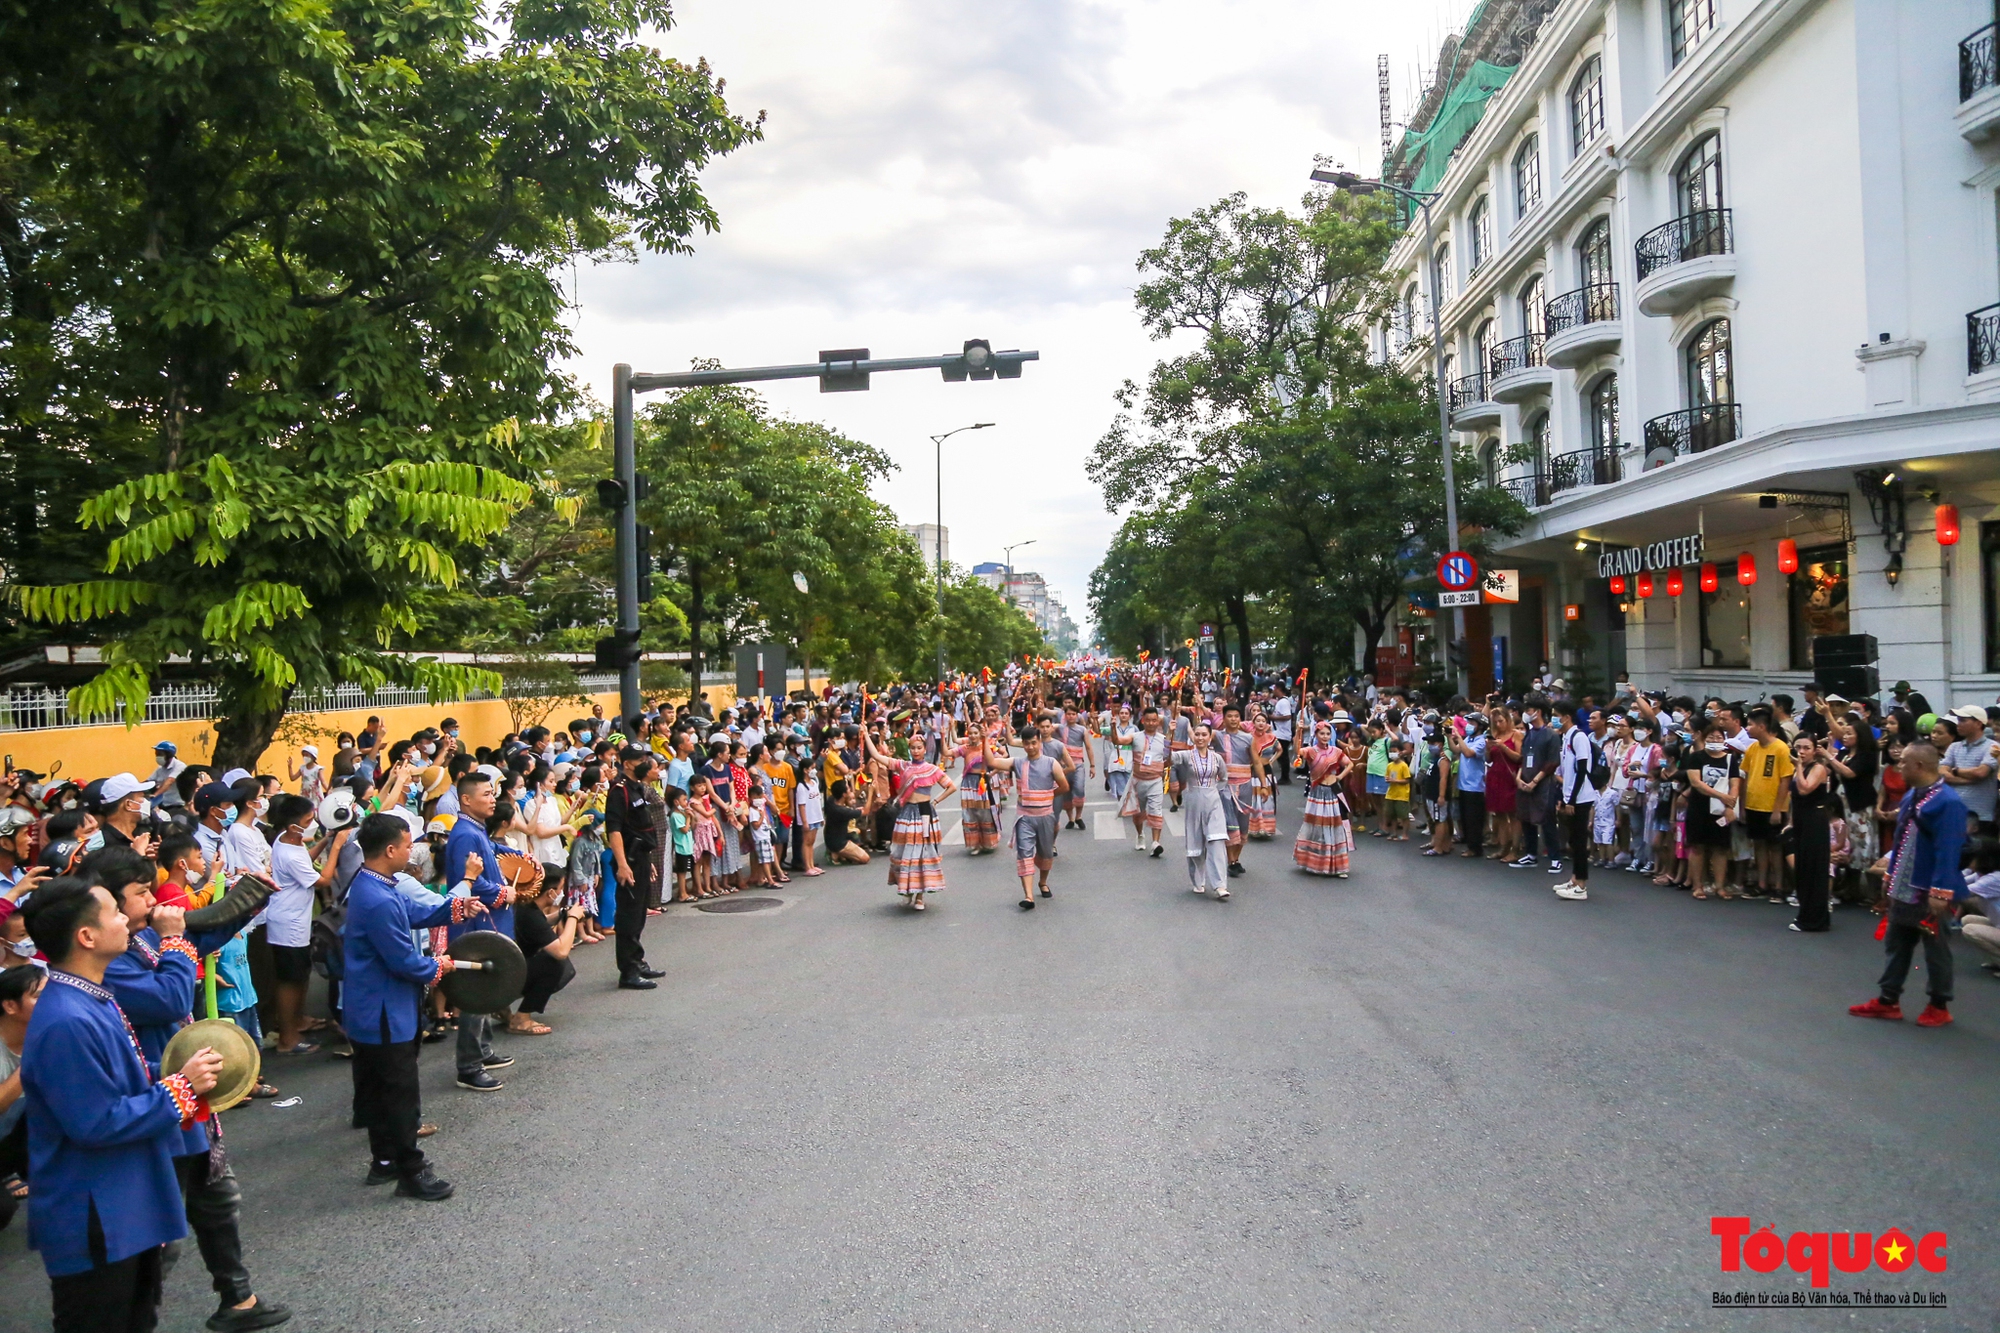 Sôi động lễ hội đường phố “Sắc màu văn hóa” tại Festival Huế - Ảnh 6.